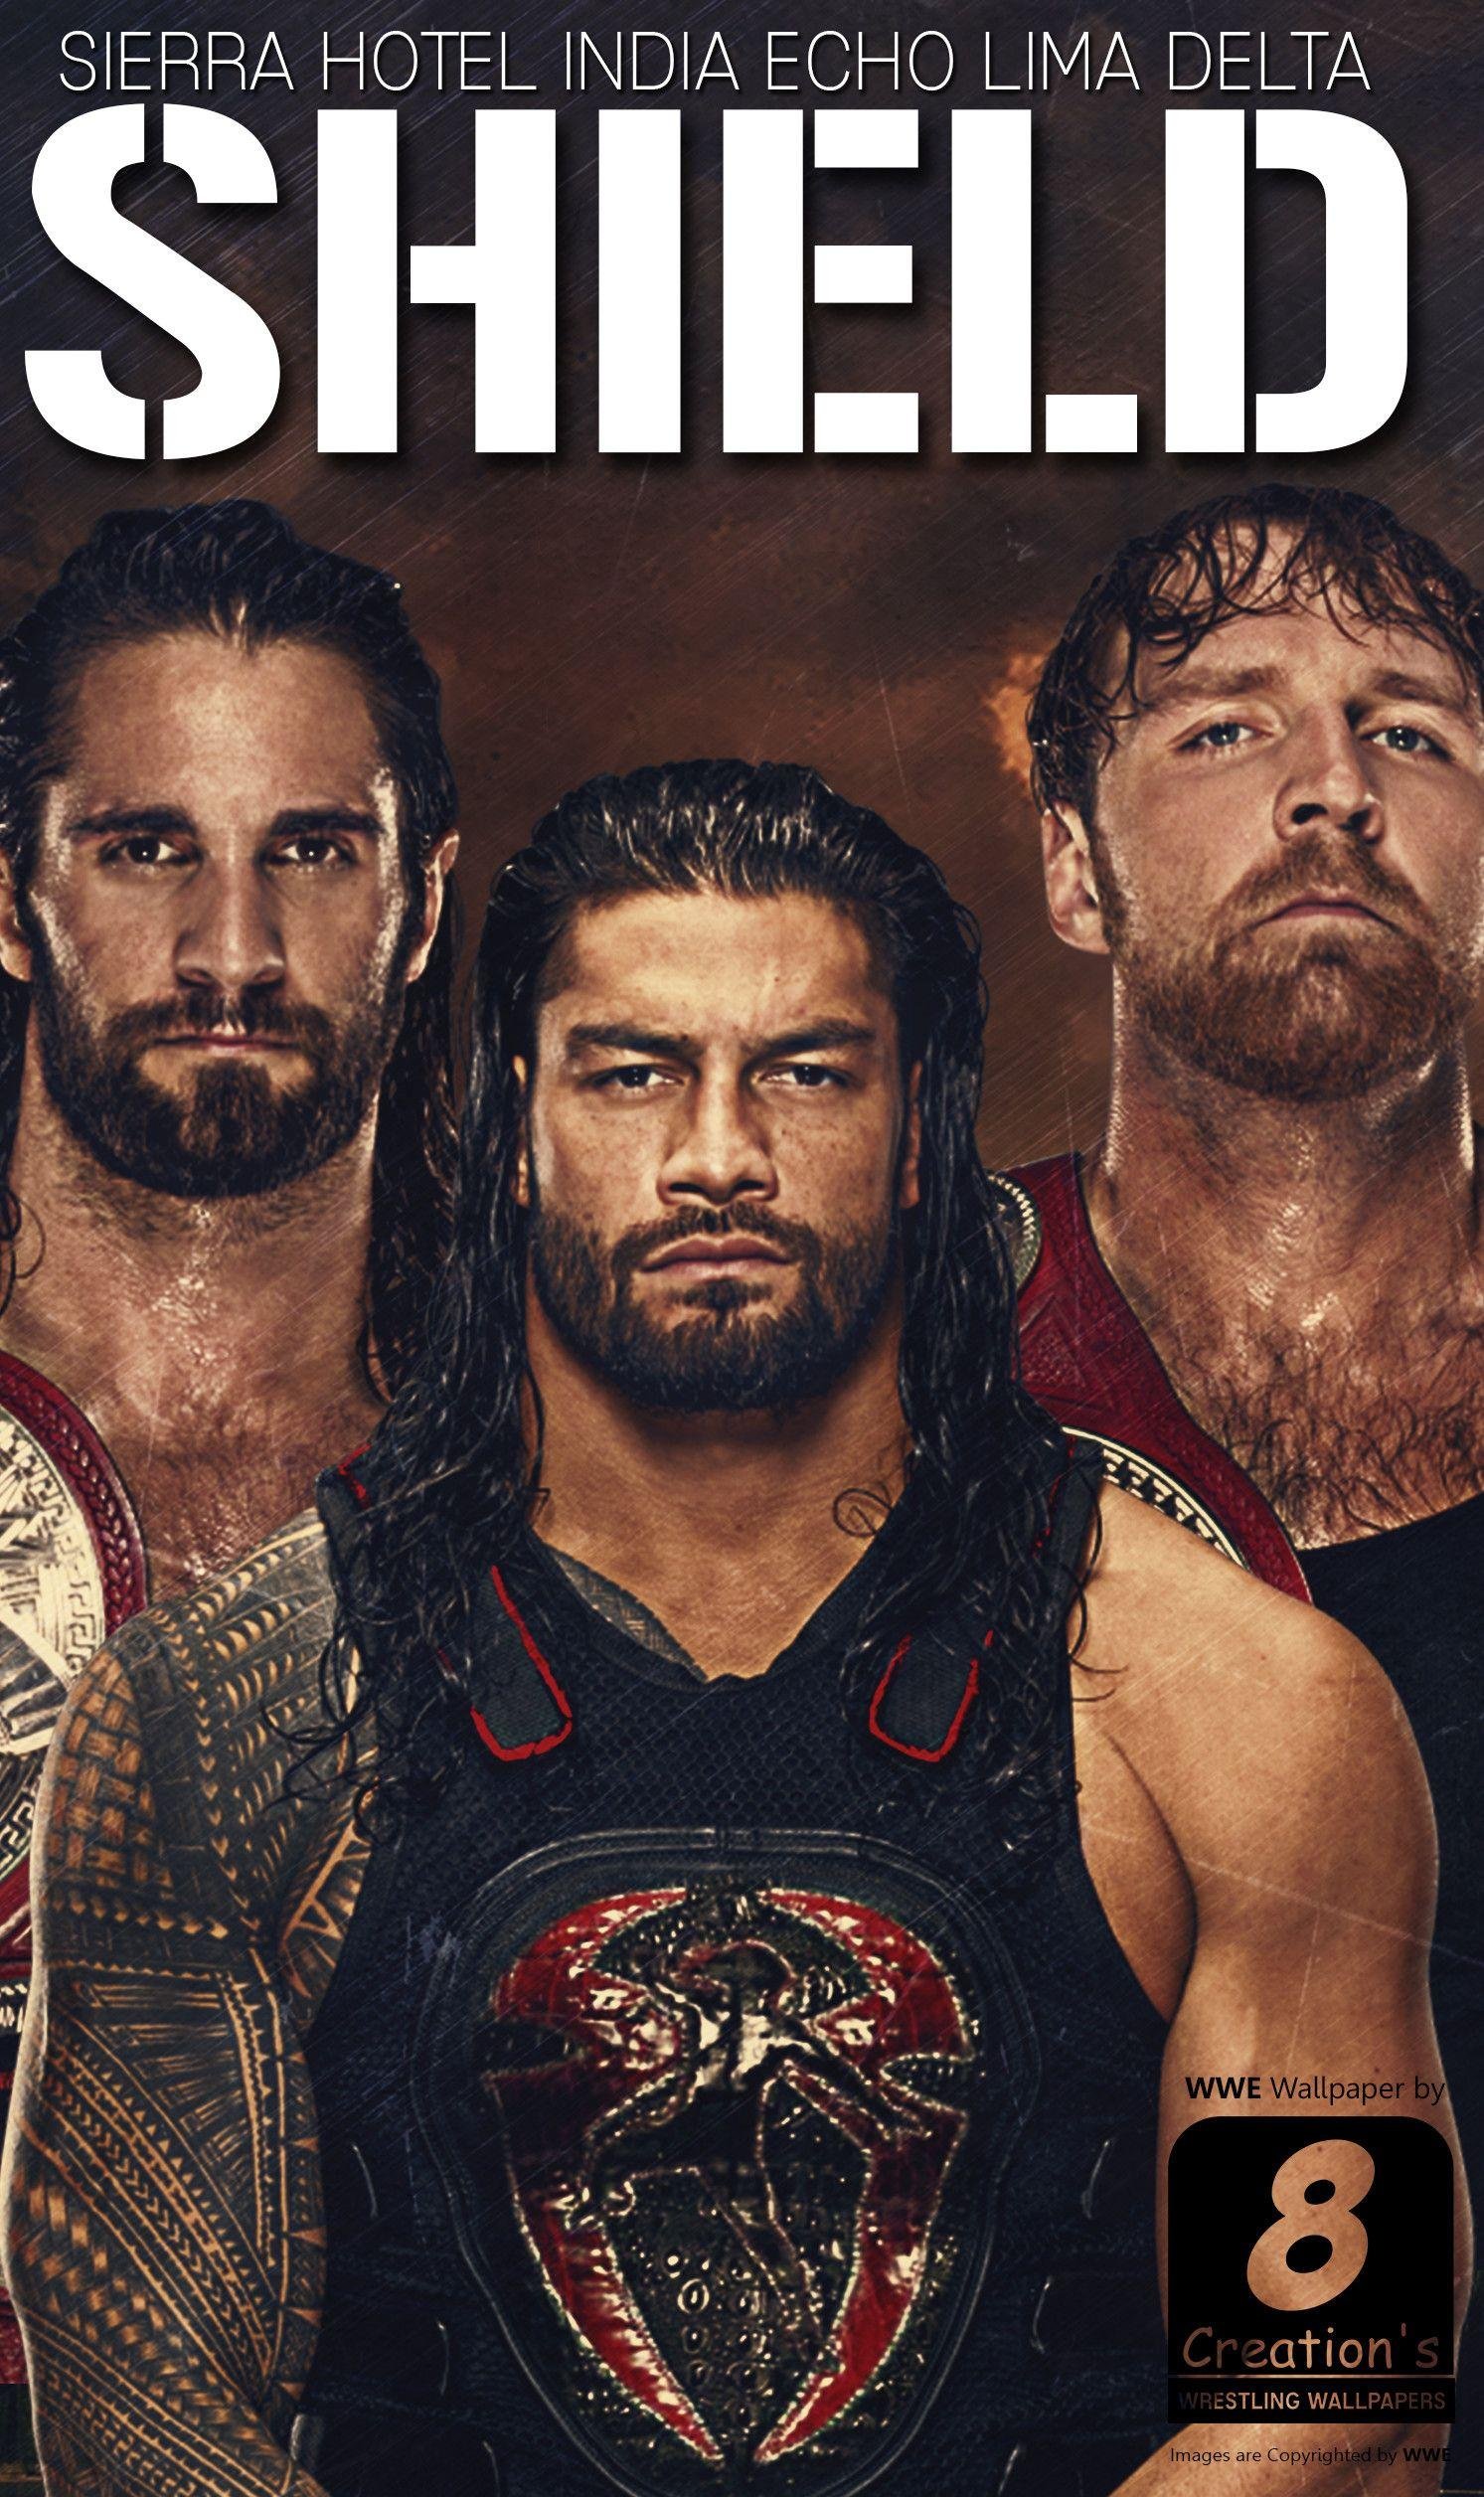 Seth Rollins WWE Wrestler HD Wallpaper  HD Wallpapers